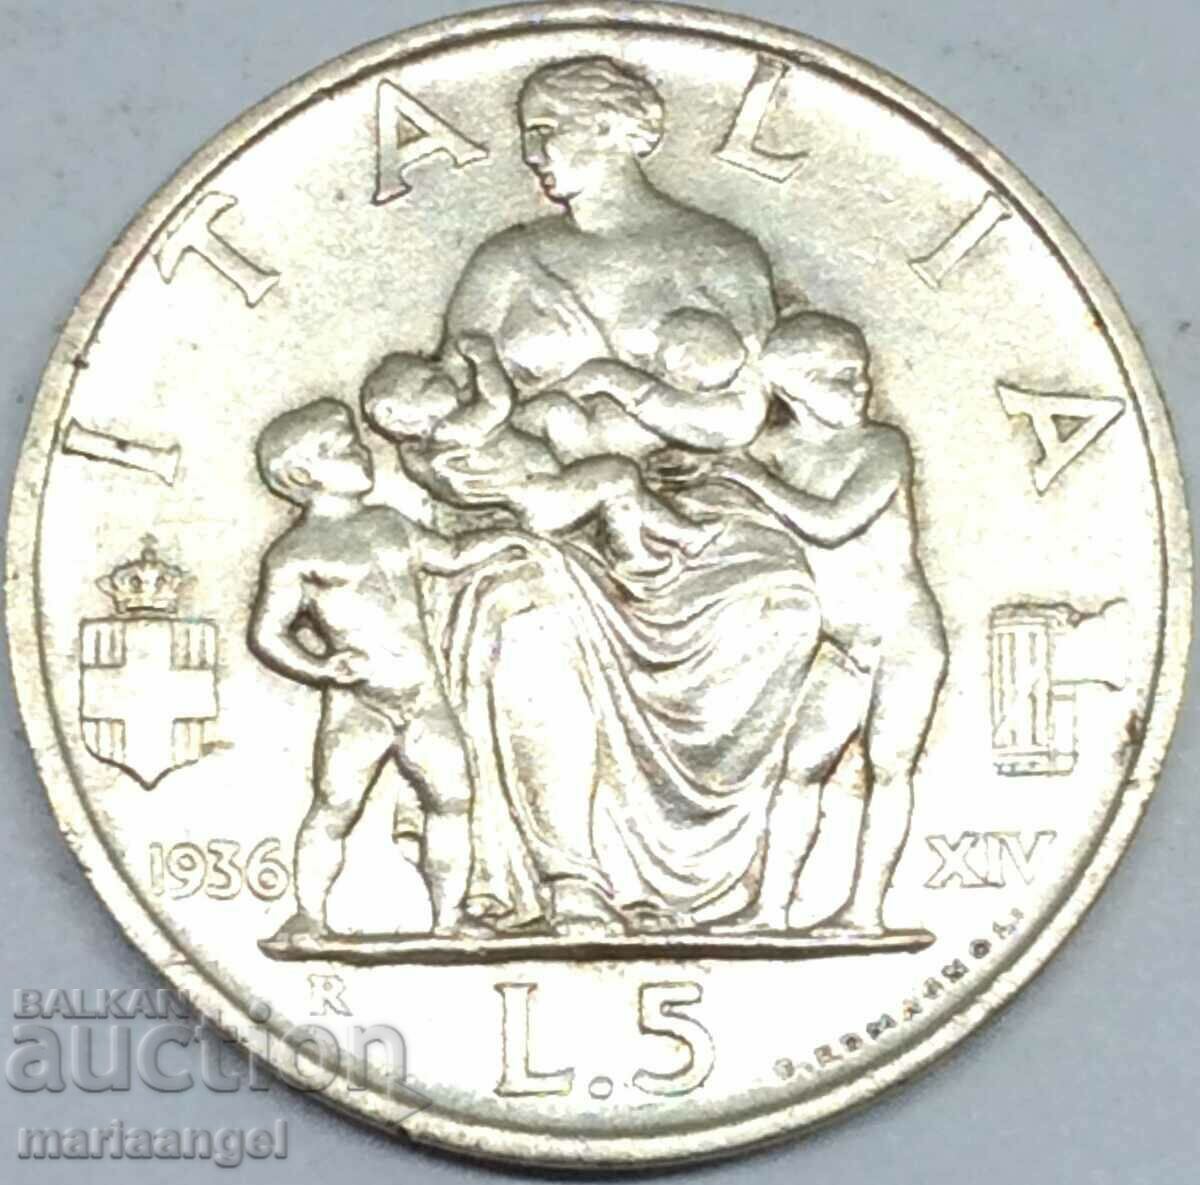 5 lire 1936 Italy * F E R T * silver